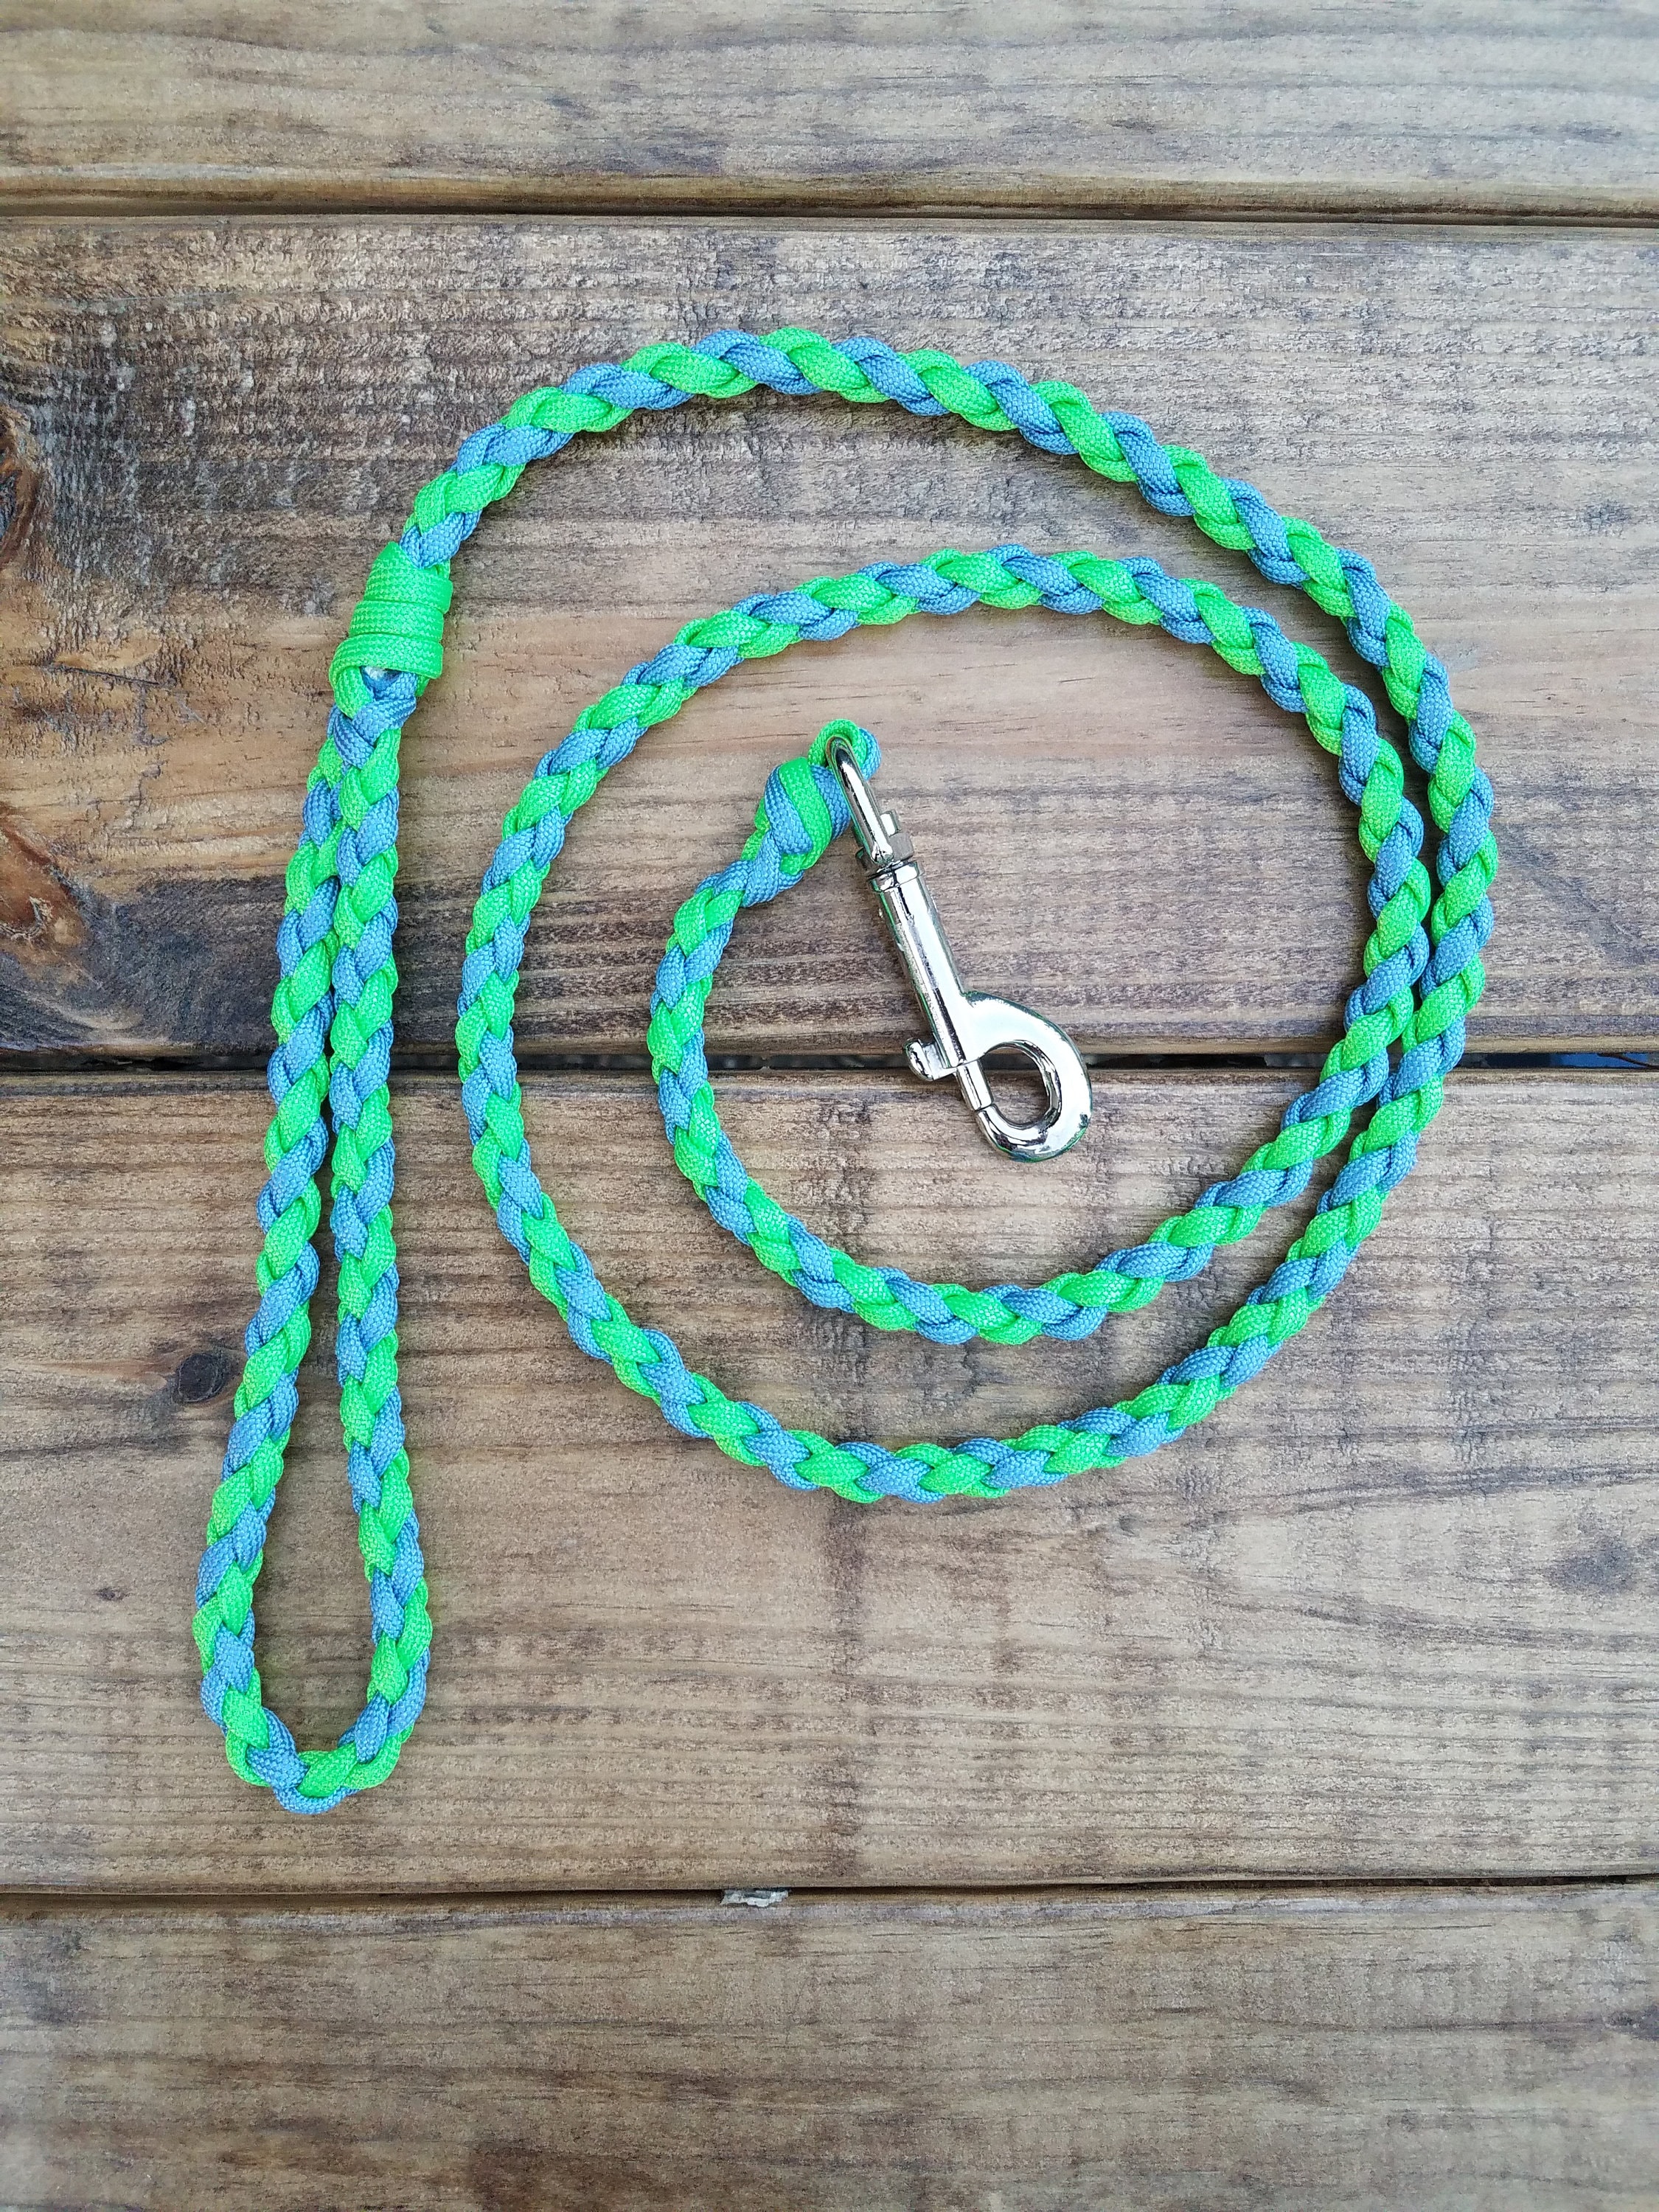 内祝い 358mallAlvalley Braided Dog Leash with Loop - Handmade